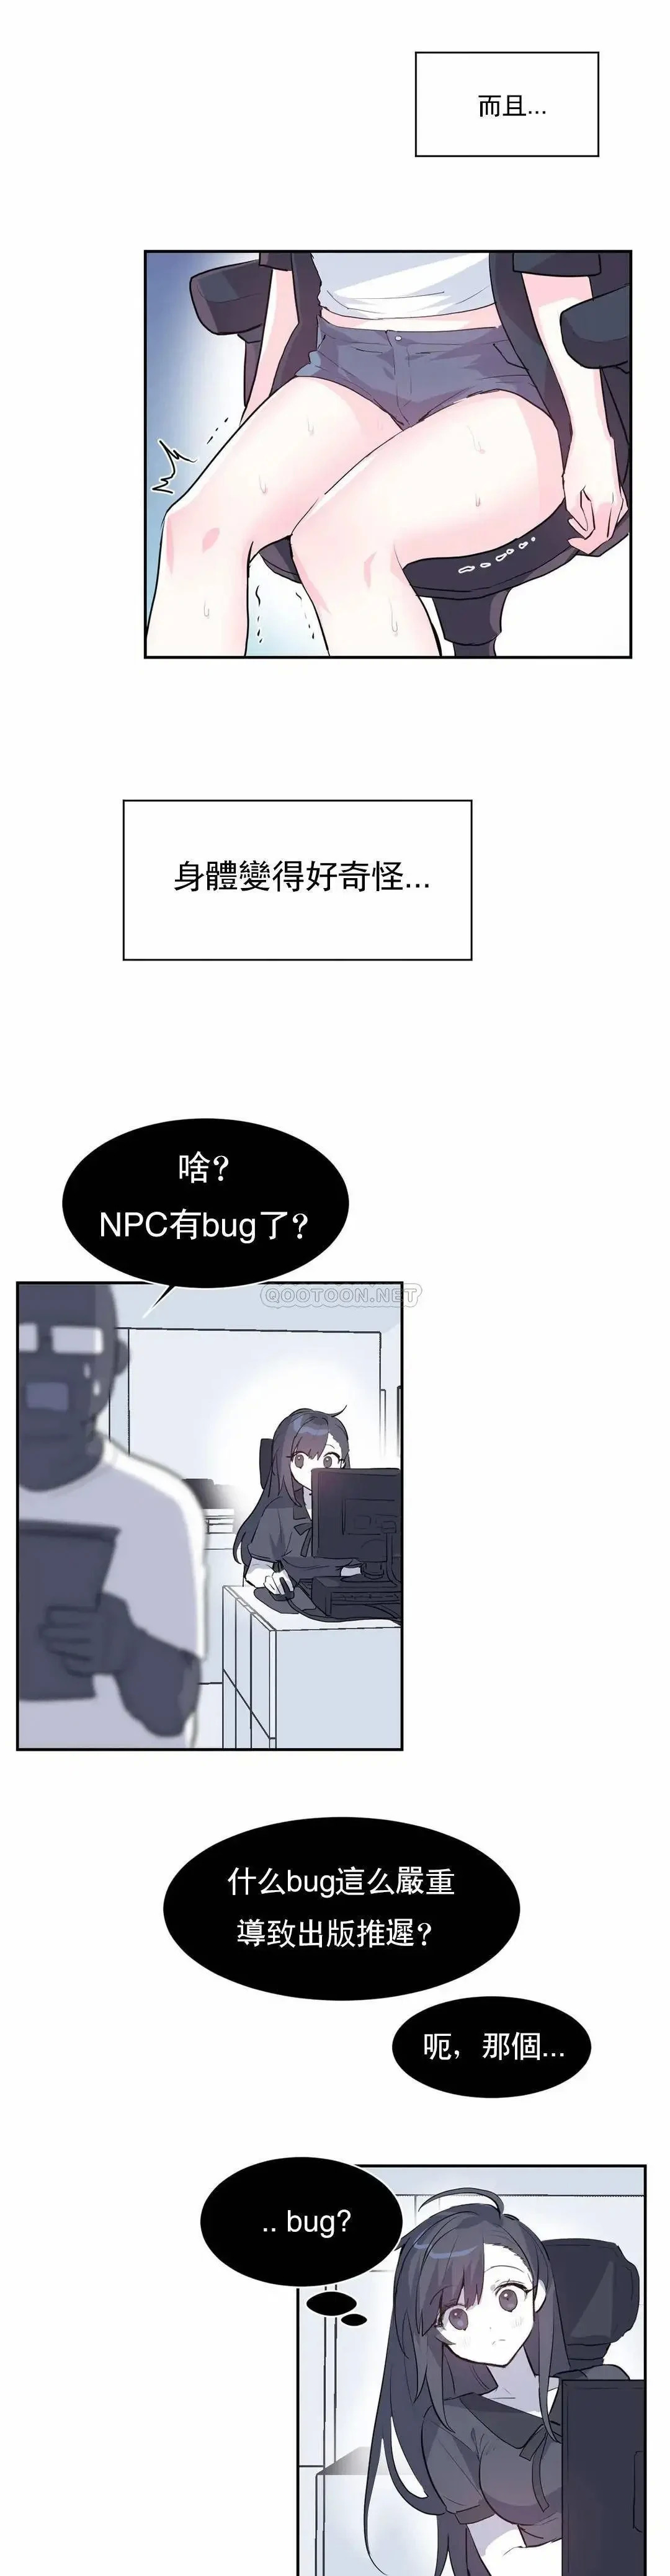 《爱爱仙境》漫画 第2话 NPC集体发情